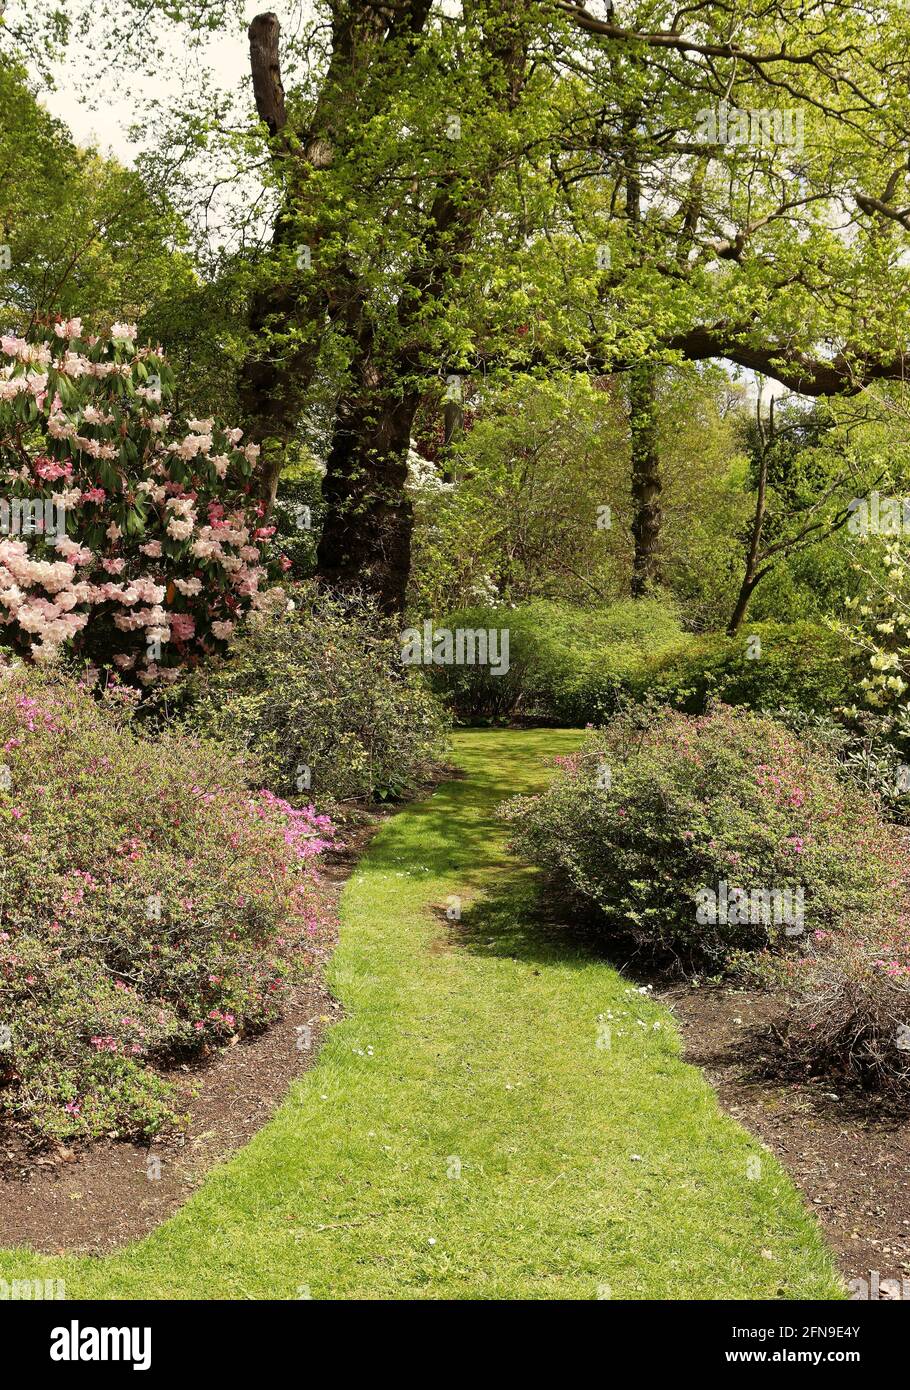 Primavera in un giardino paesaggistico inglese con percorso erboso tra Rododendri in fiore e Azalee Foto Stock